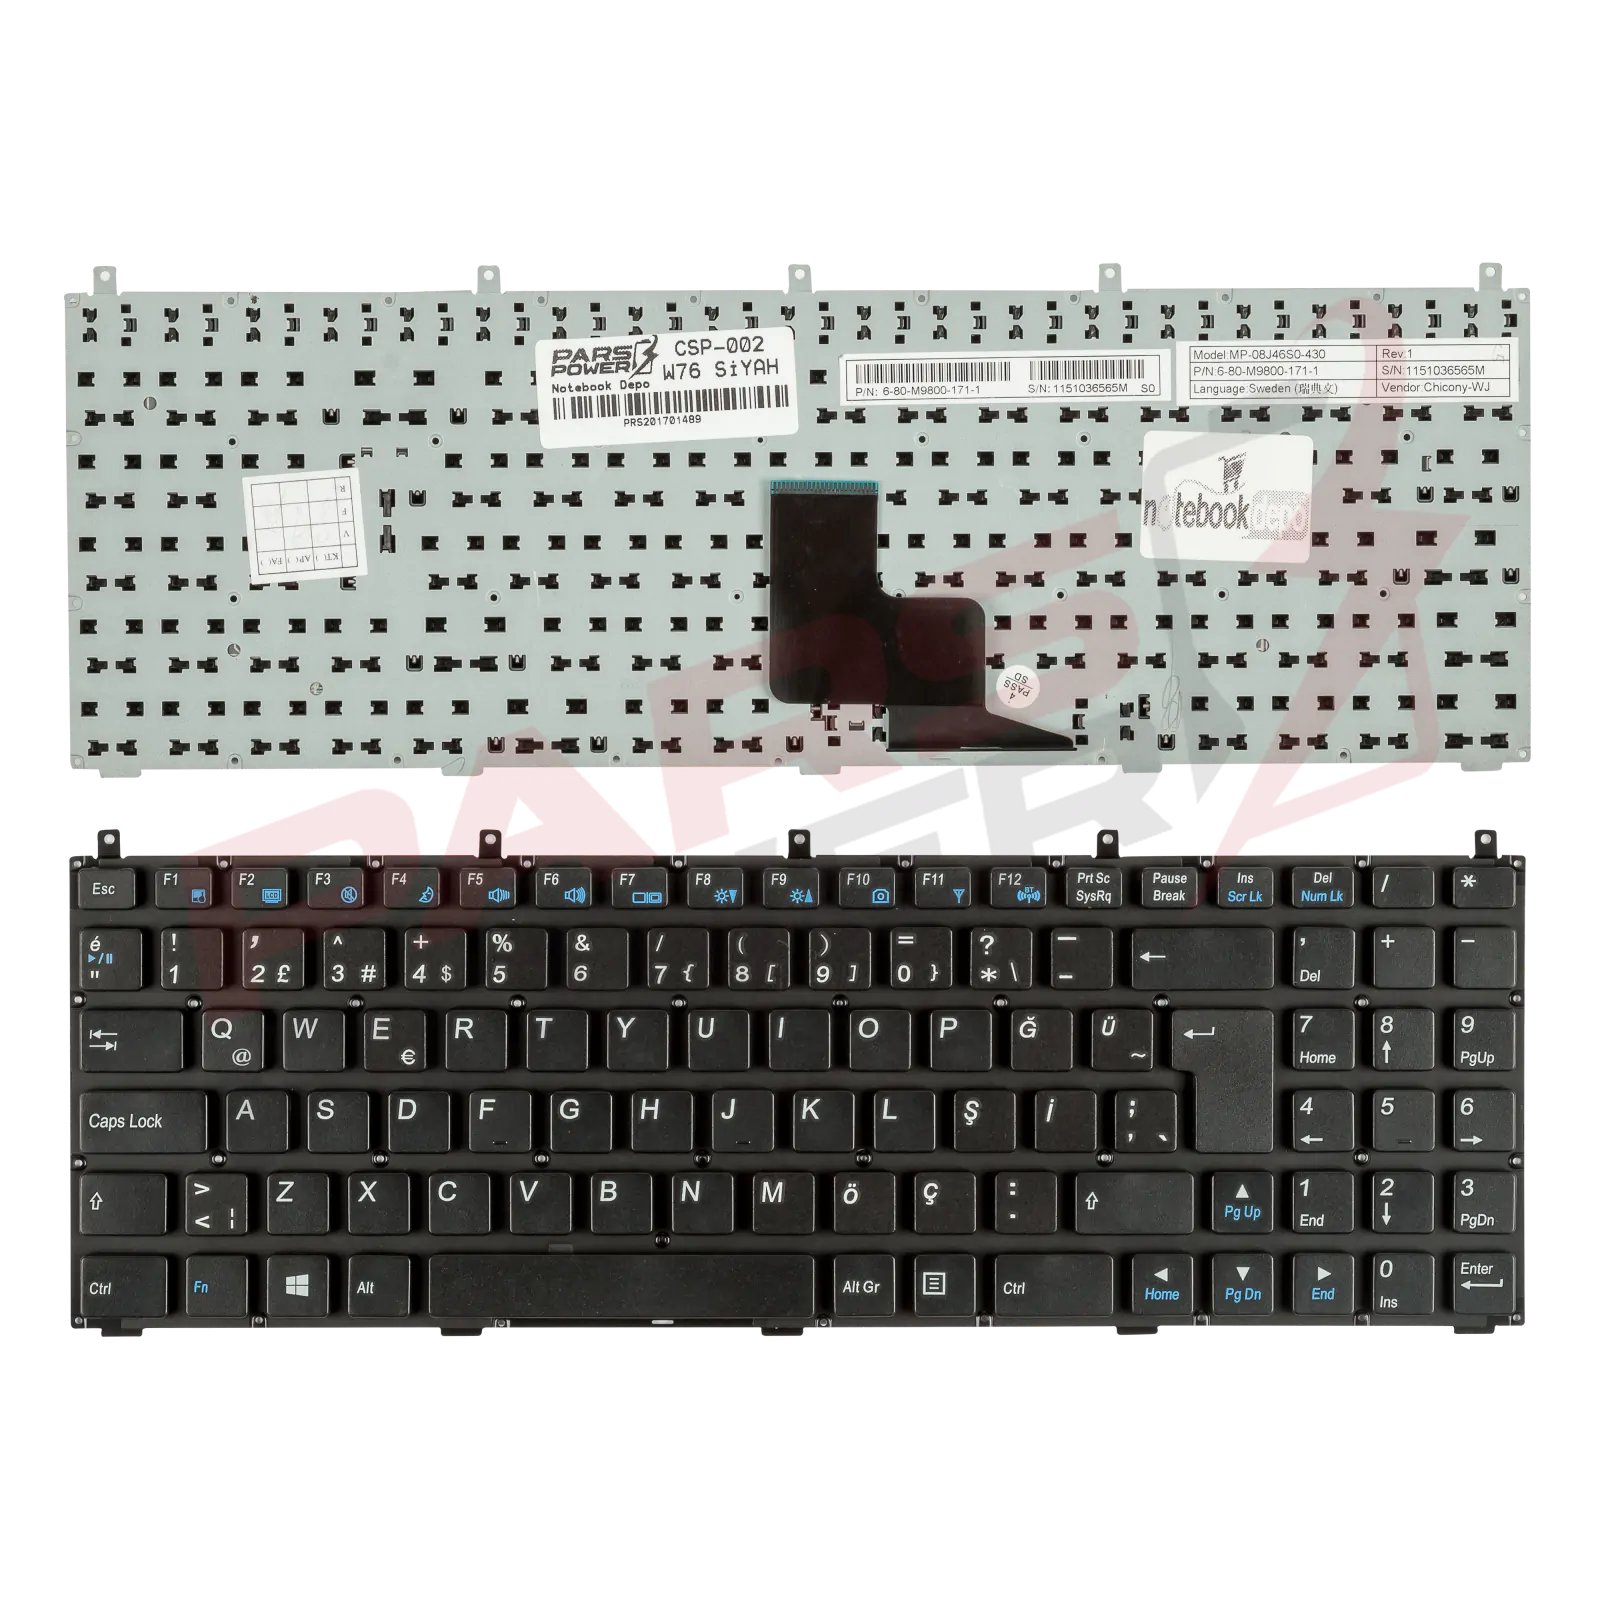 Arçelik W760S Notebook Klavye (Siyah TR)